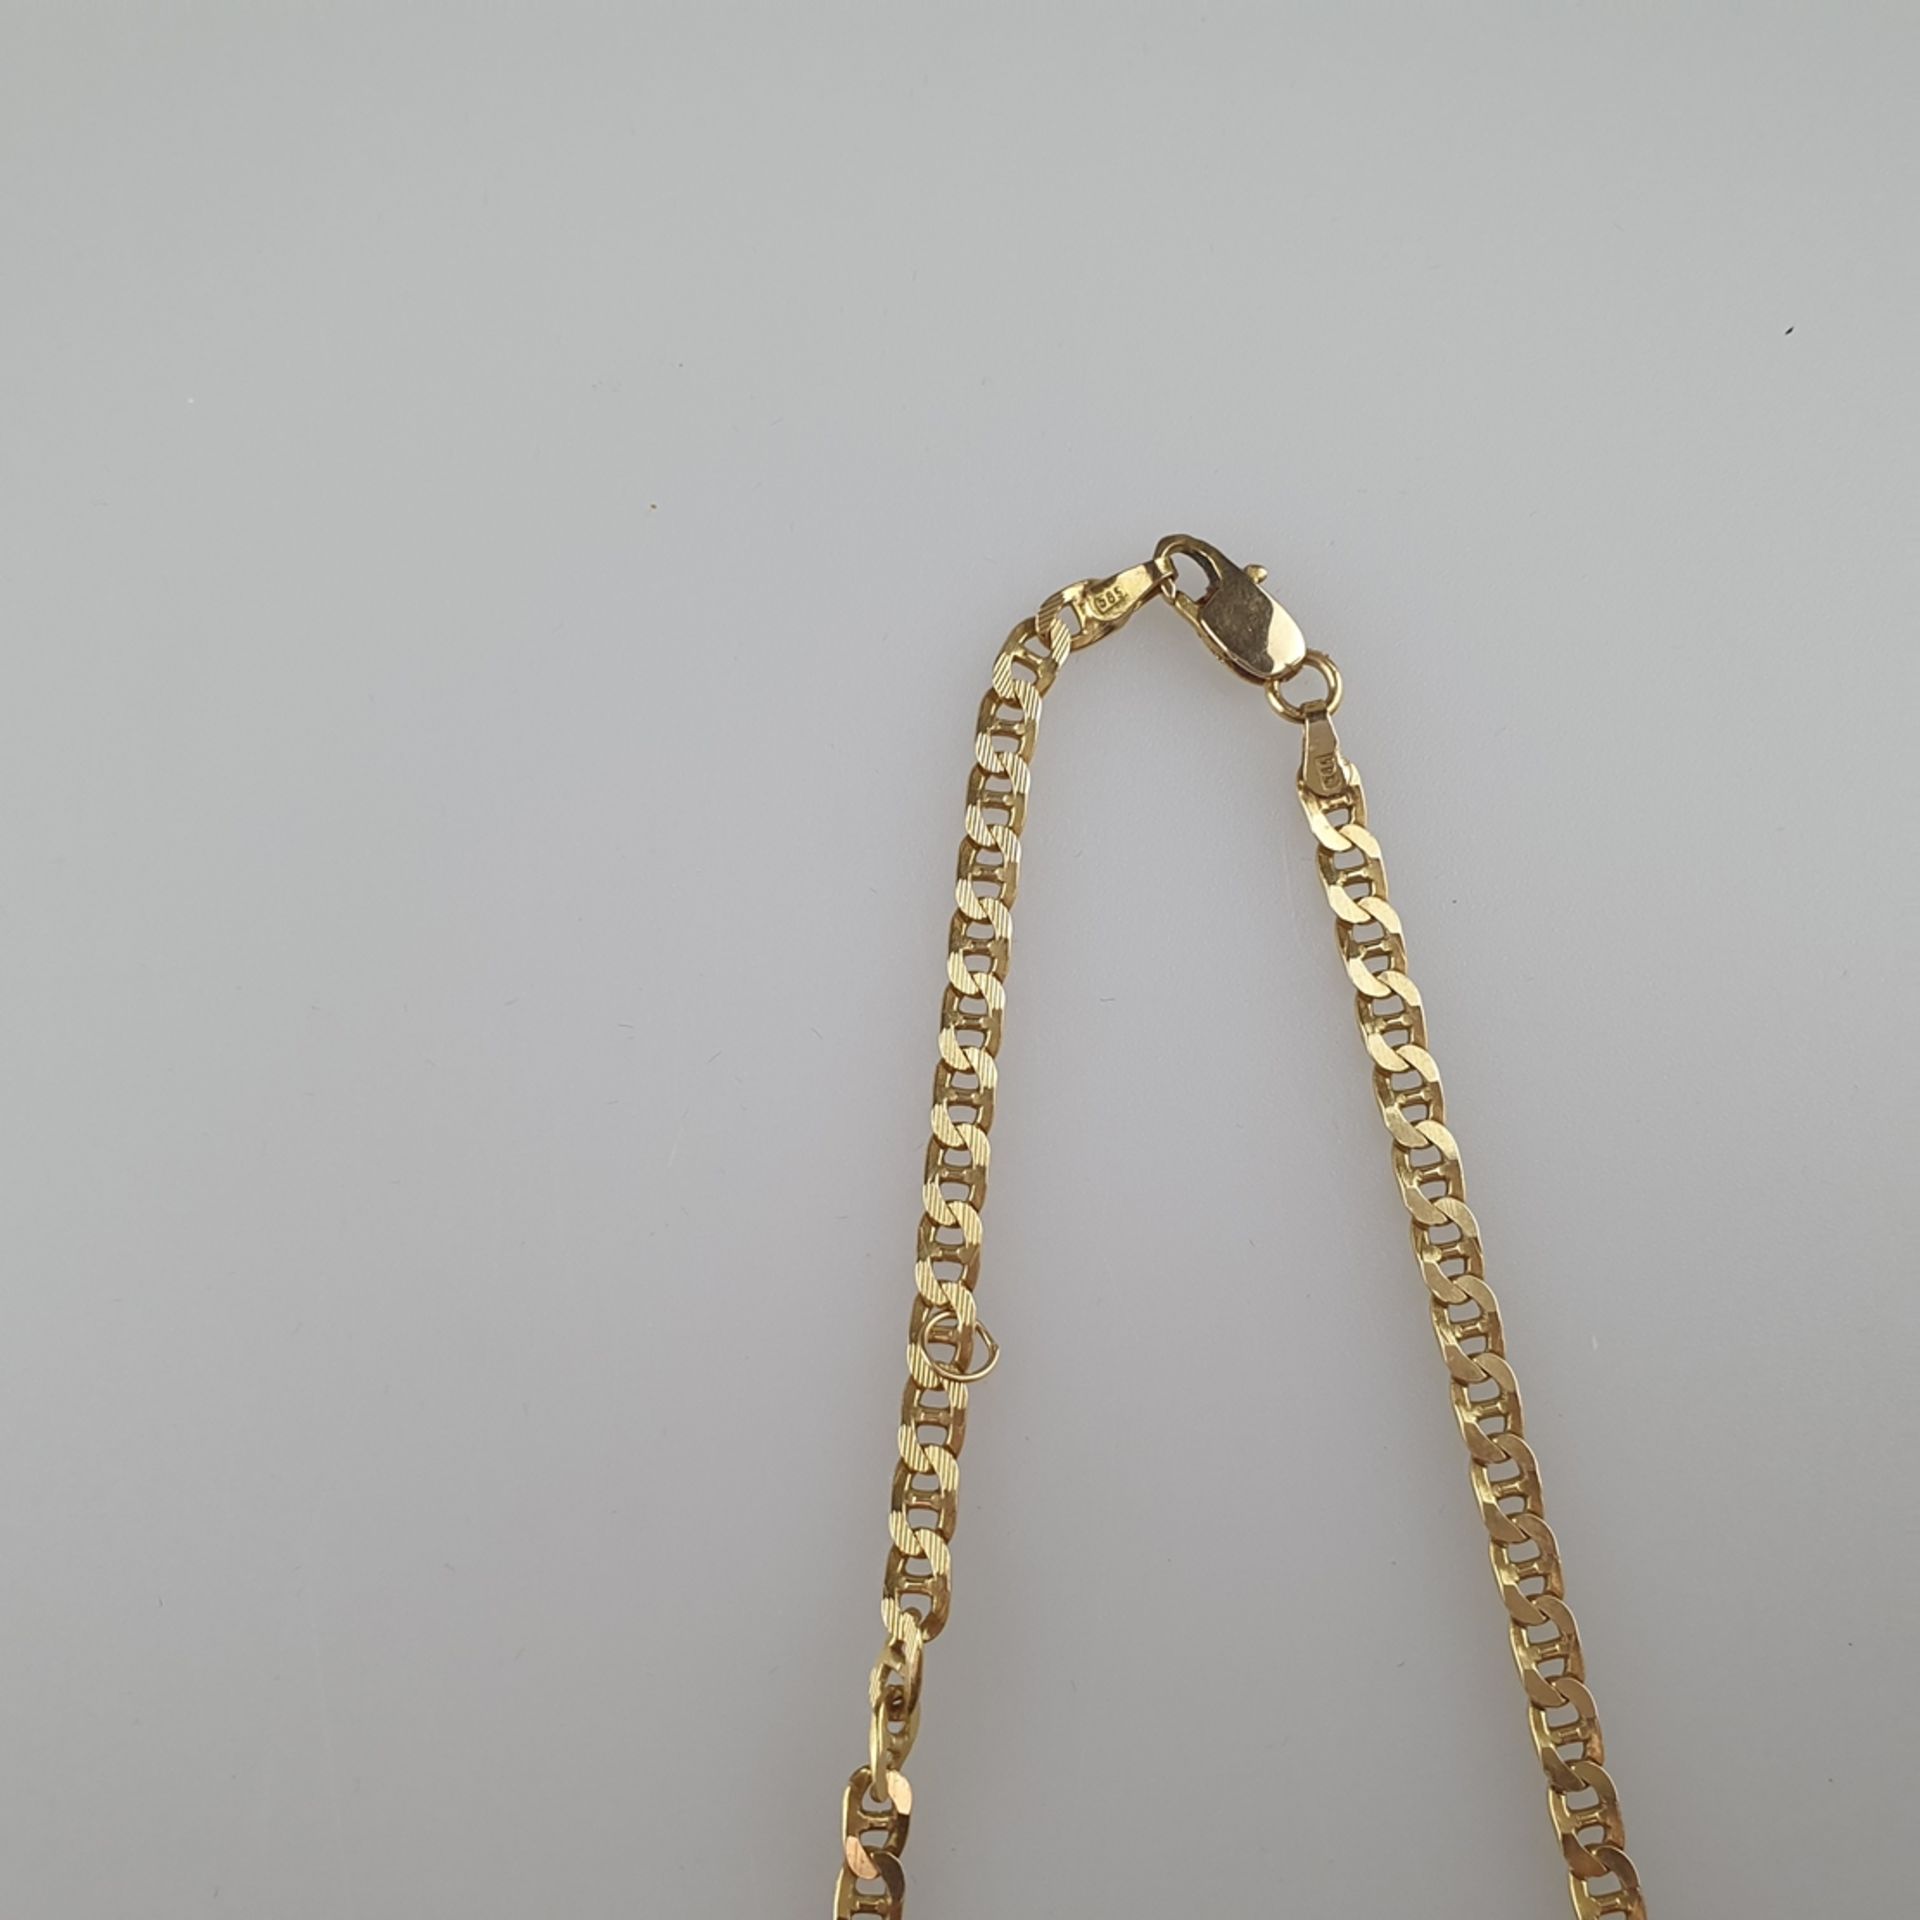 Goldkette - Gelbgold 585/000, gepunzt, feine Gliederkette mit Karabinerverschluss, teils geriffelt, - Image 3 of 3